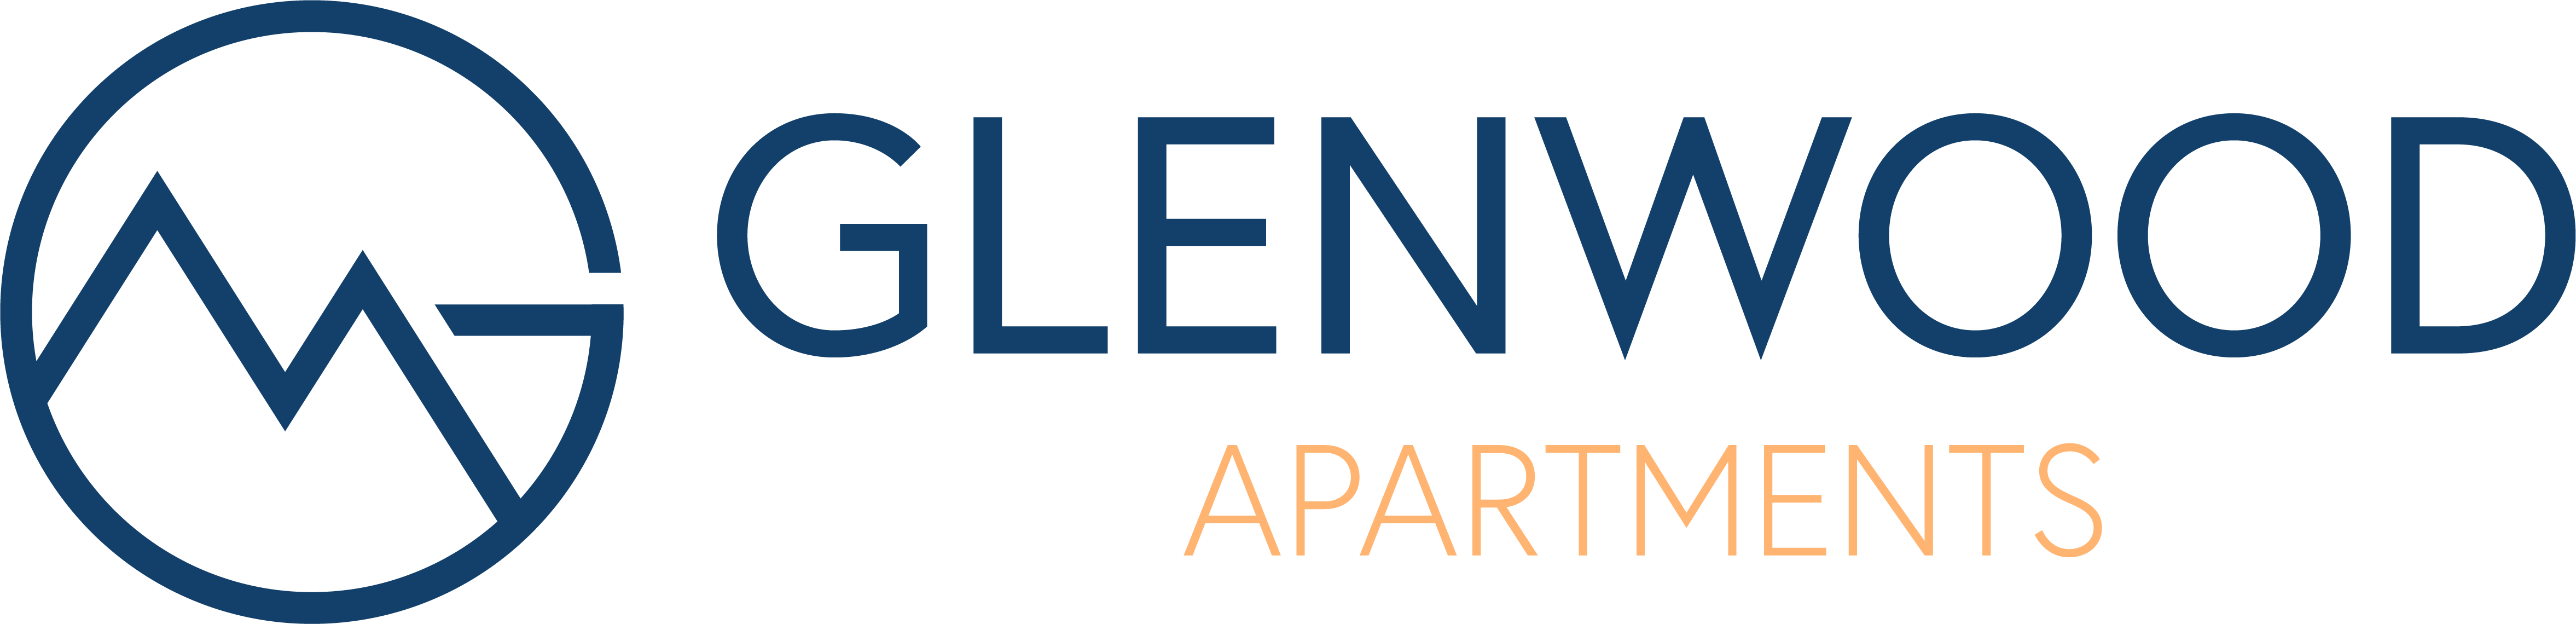 Glenwood Apartments Logo